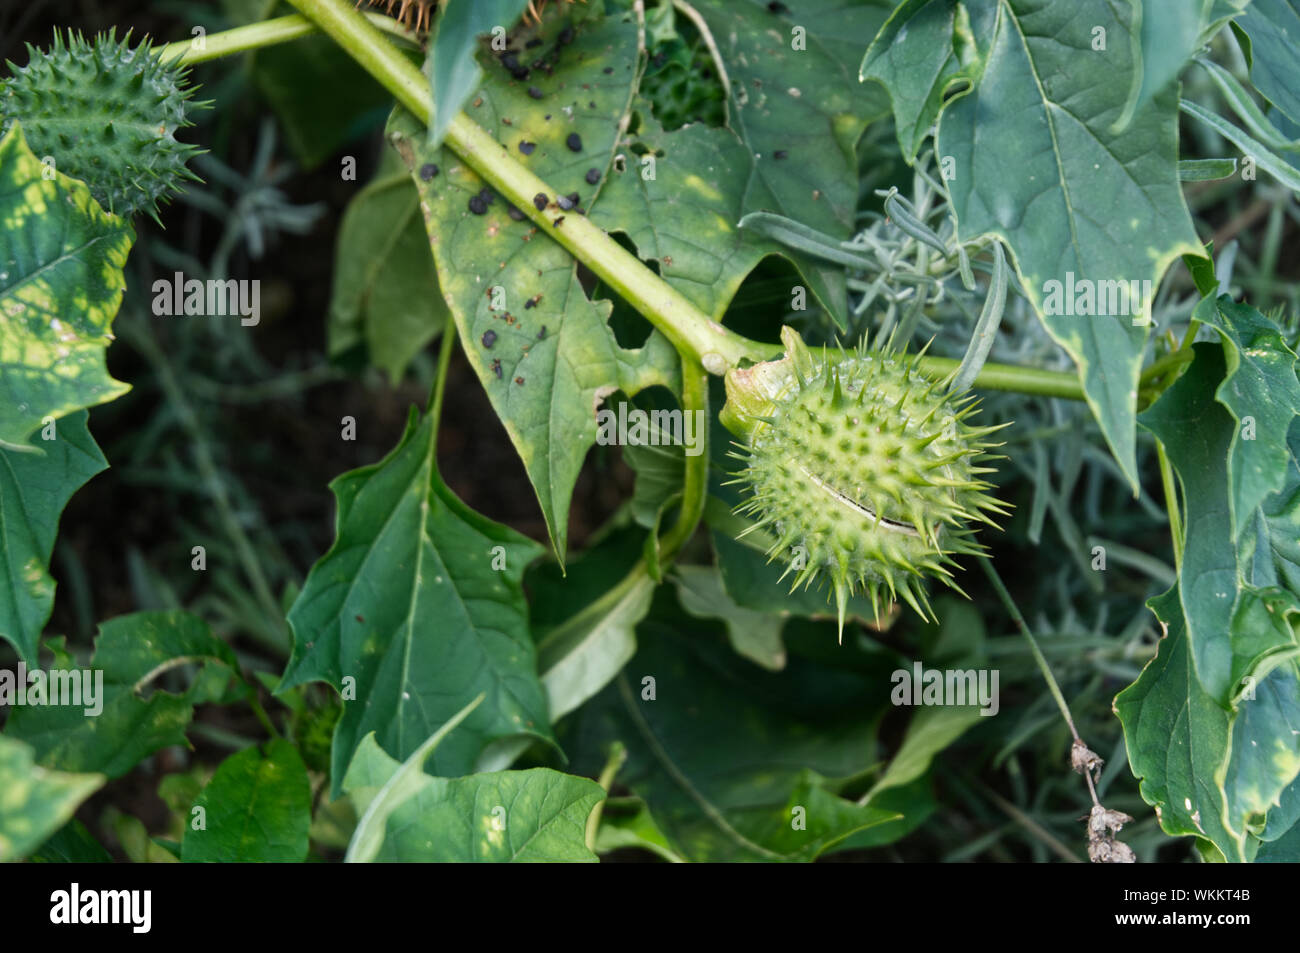 Nahaufnahme der stachelige Frucht einer jimson Weed, Datura stramonium,  eine giftige Pflanze halocinogen Stockfotografie - Alamy